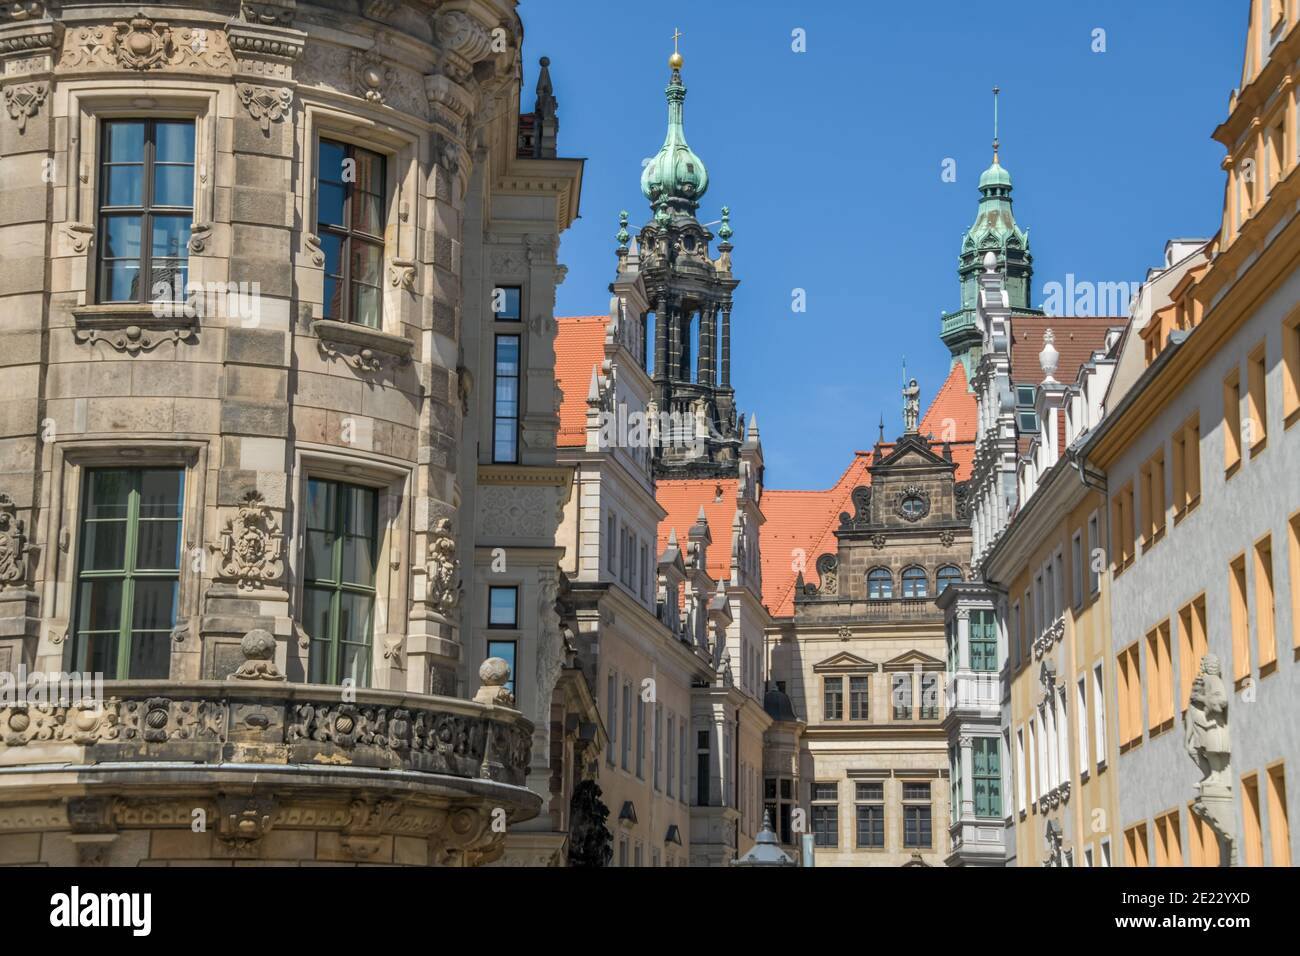 Fassaden und Giebel, Schloßstraße, Dresde, Sachsen, Allemagne Banque D'Images